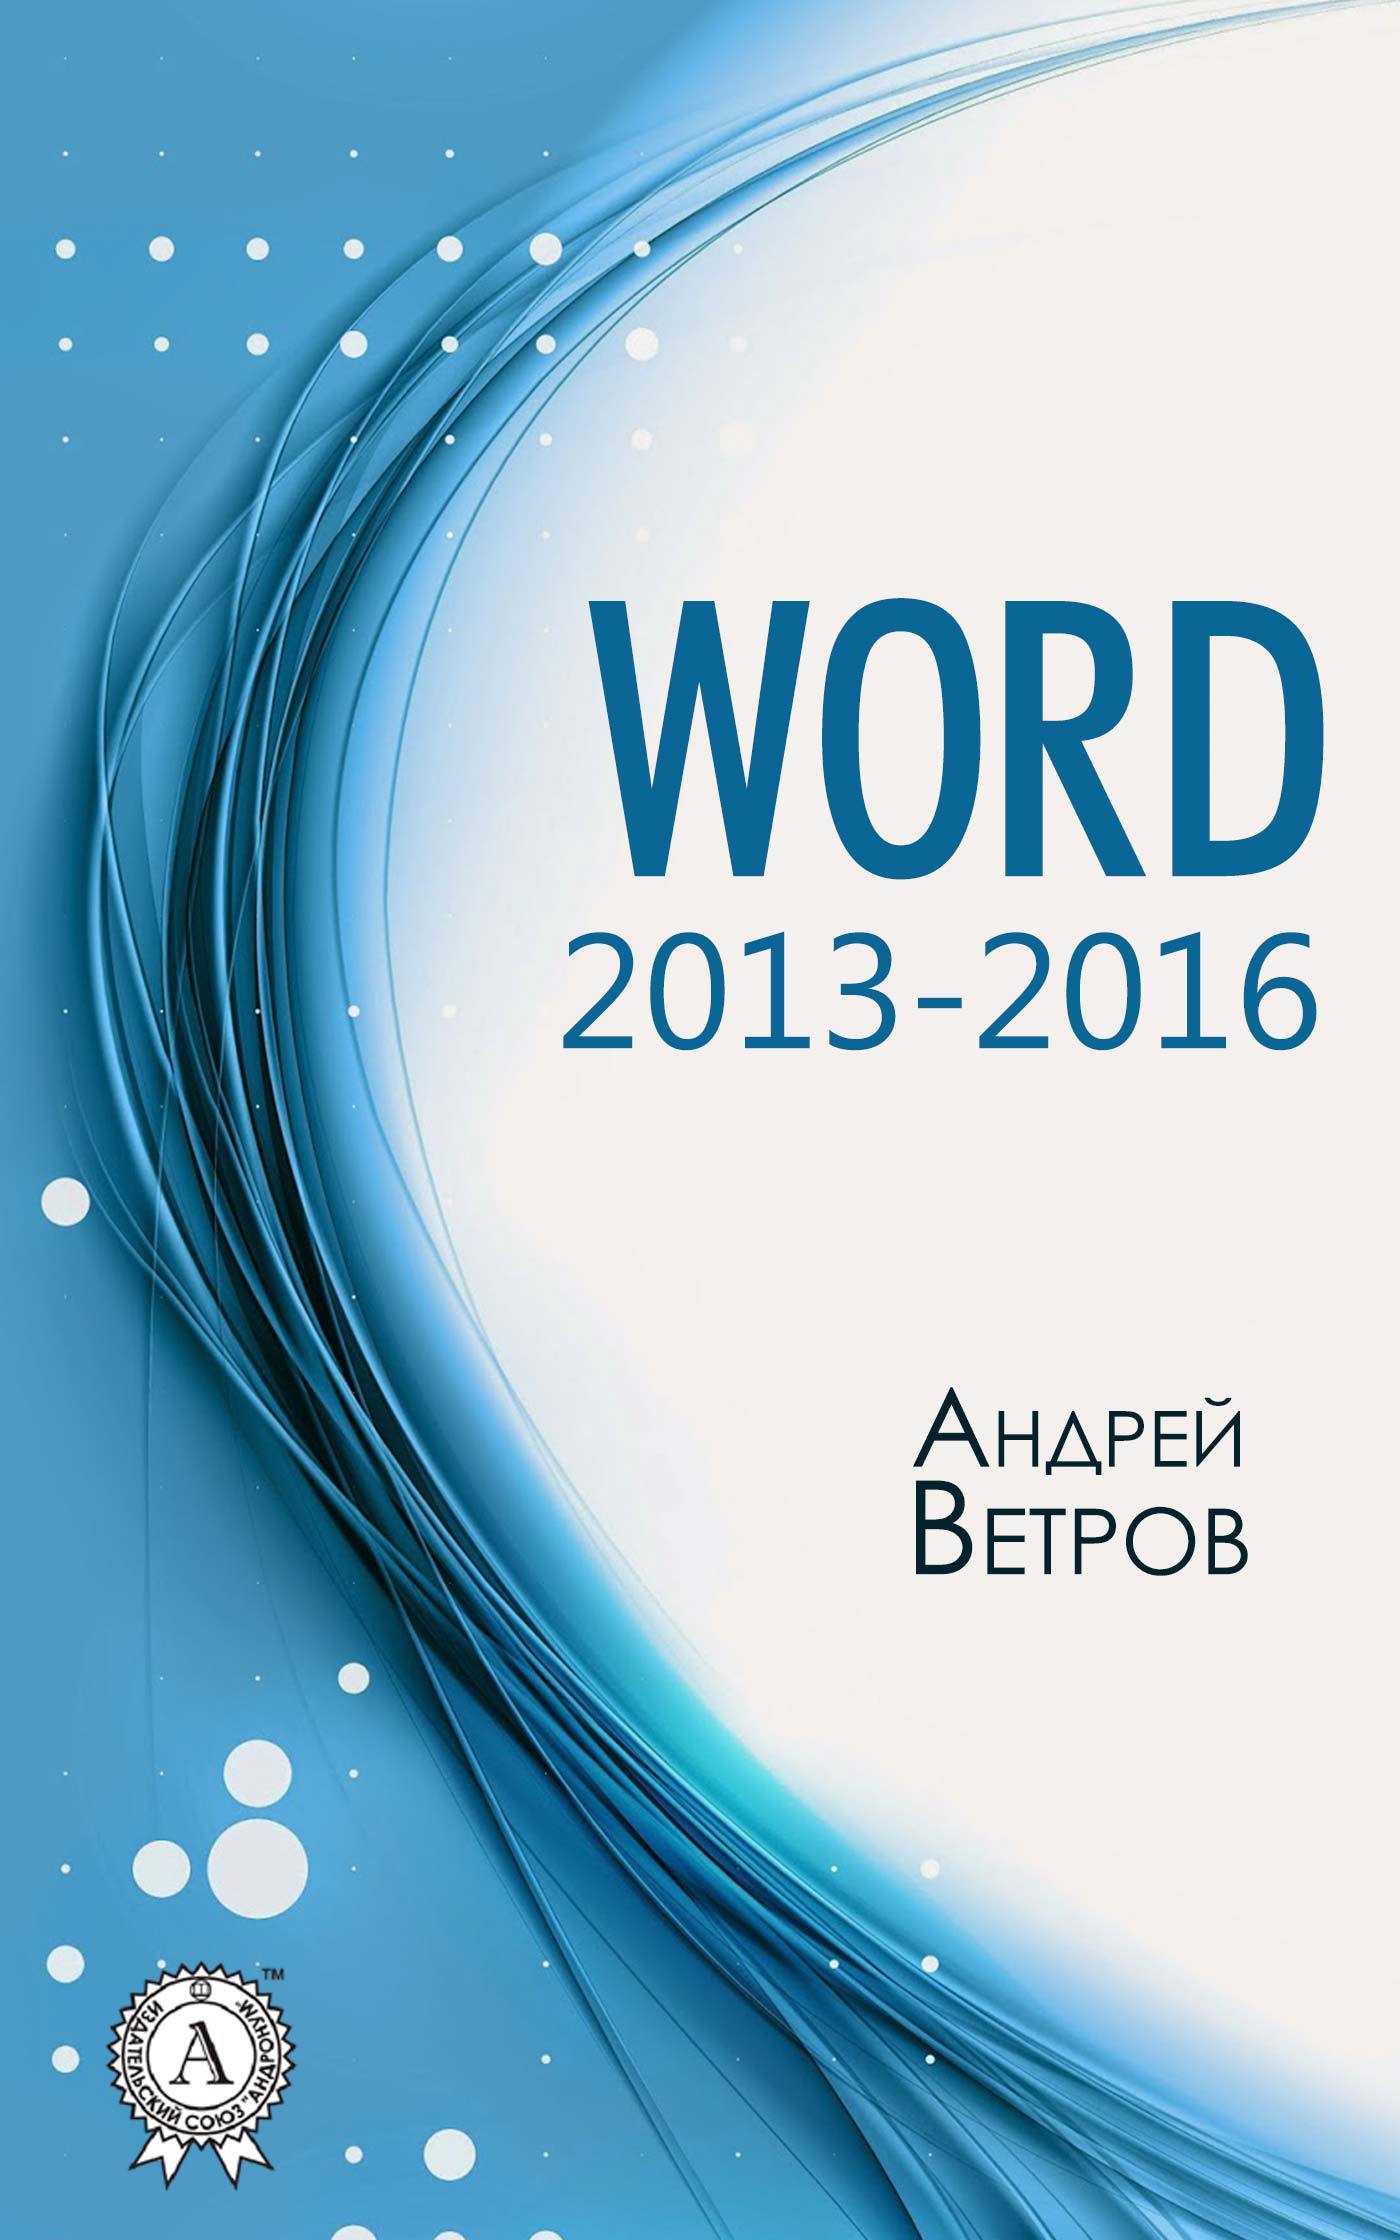 Книга Word 2013—2016 из серии , созданная Андрей Ветров, может относится к жанру Программы, ОС и Сети, Руководства. Стоимость электронной книги Word 2013—2016 с идентификатором 27101389 составляет 149.00 руб.